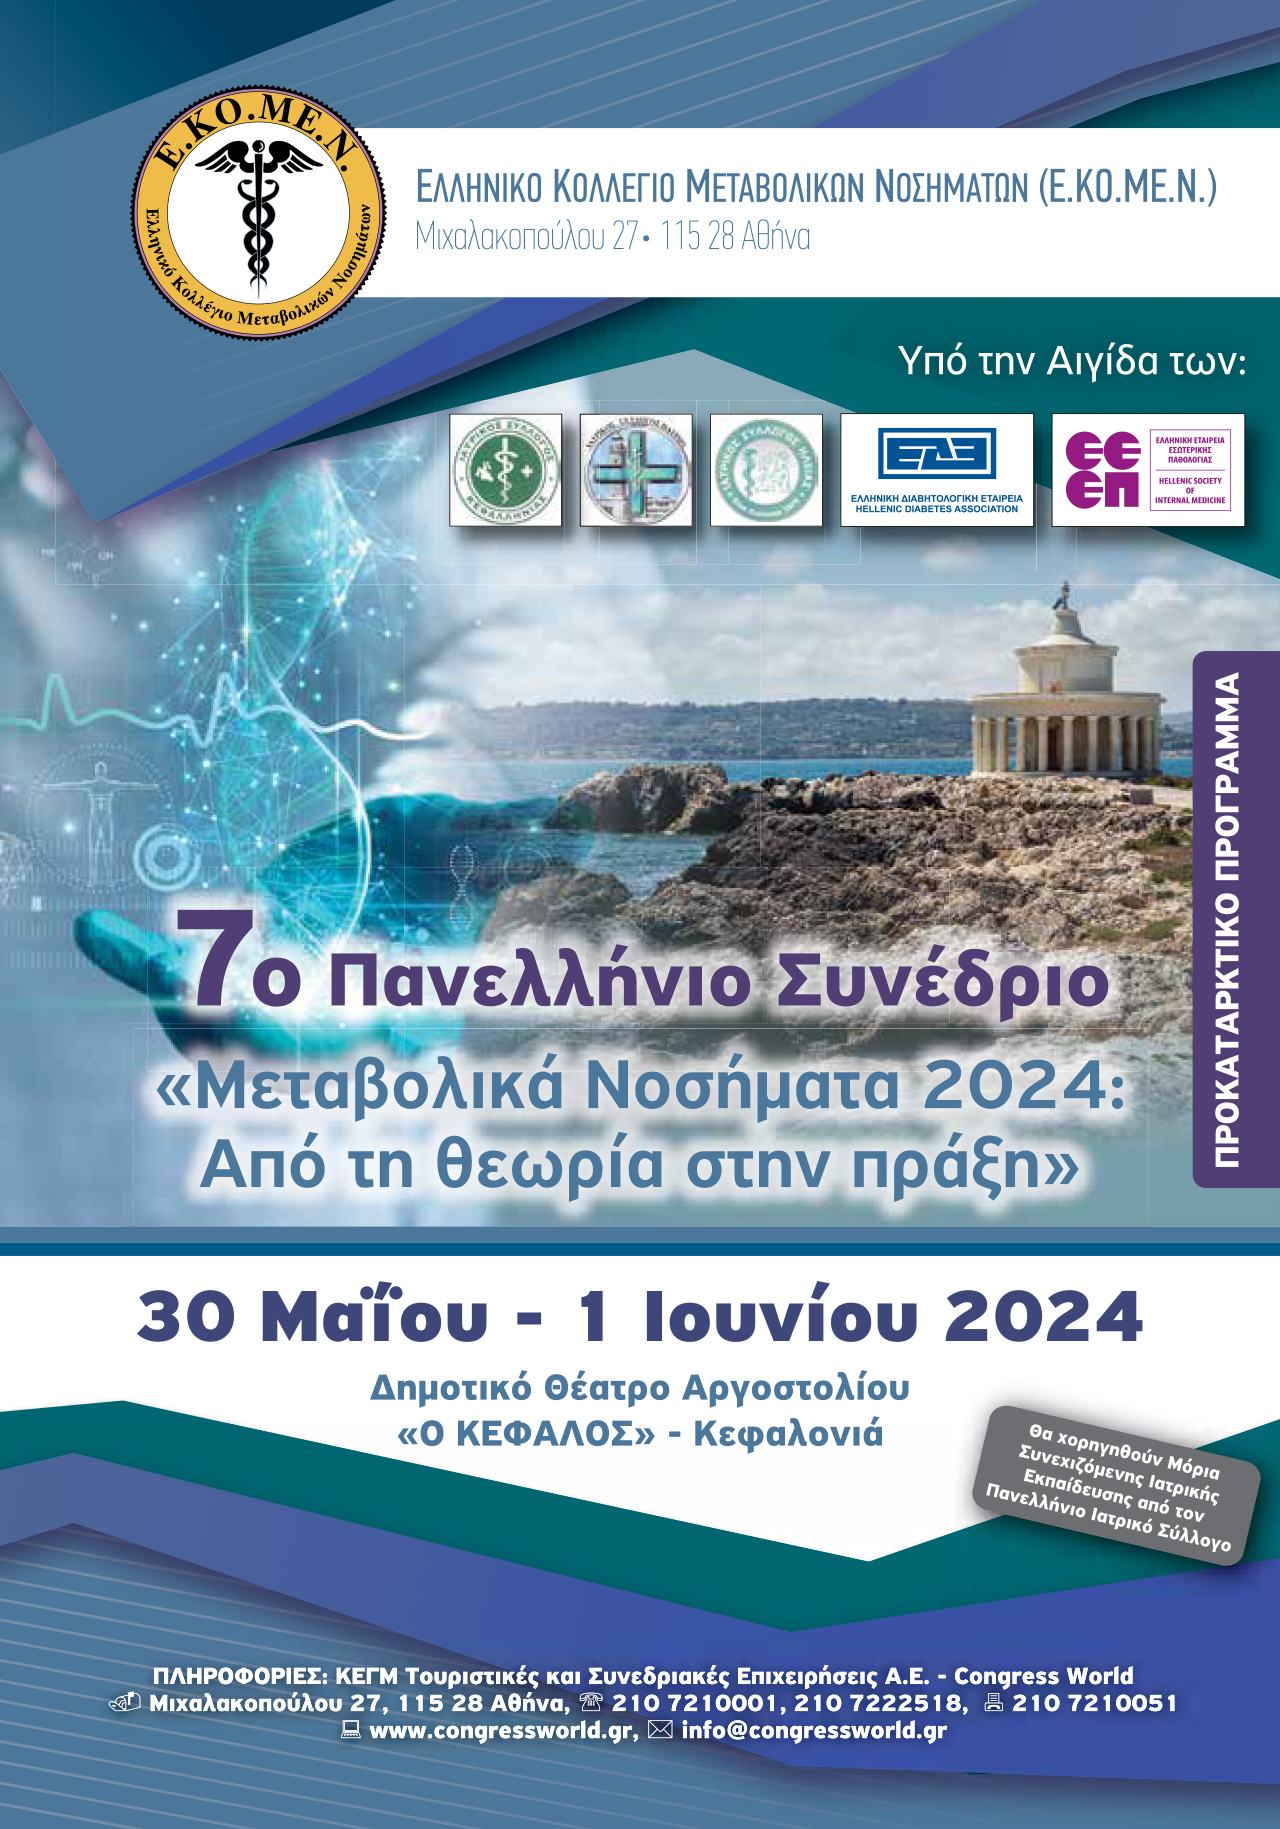 7ο Πανελλήνιο Συνέδριο - Μεταβολικά Νοσήματα 2024, από τη θεωρία στη πράξη